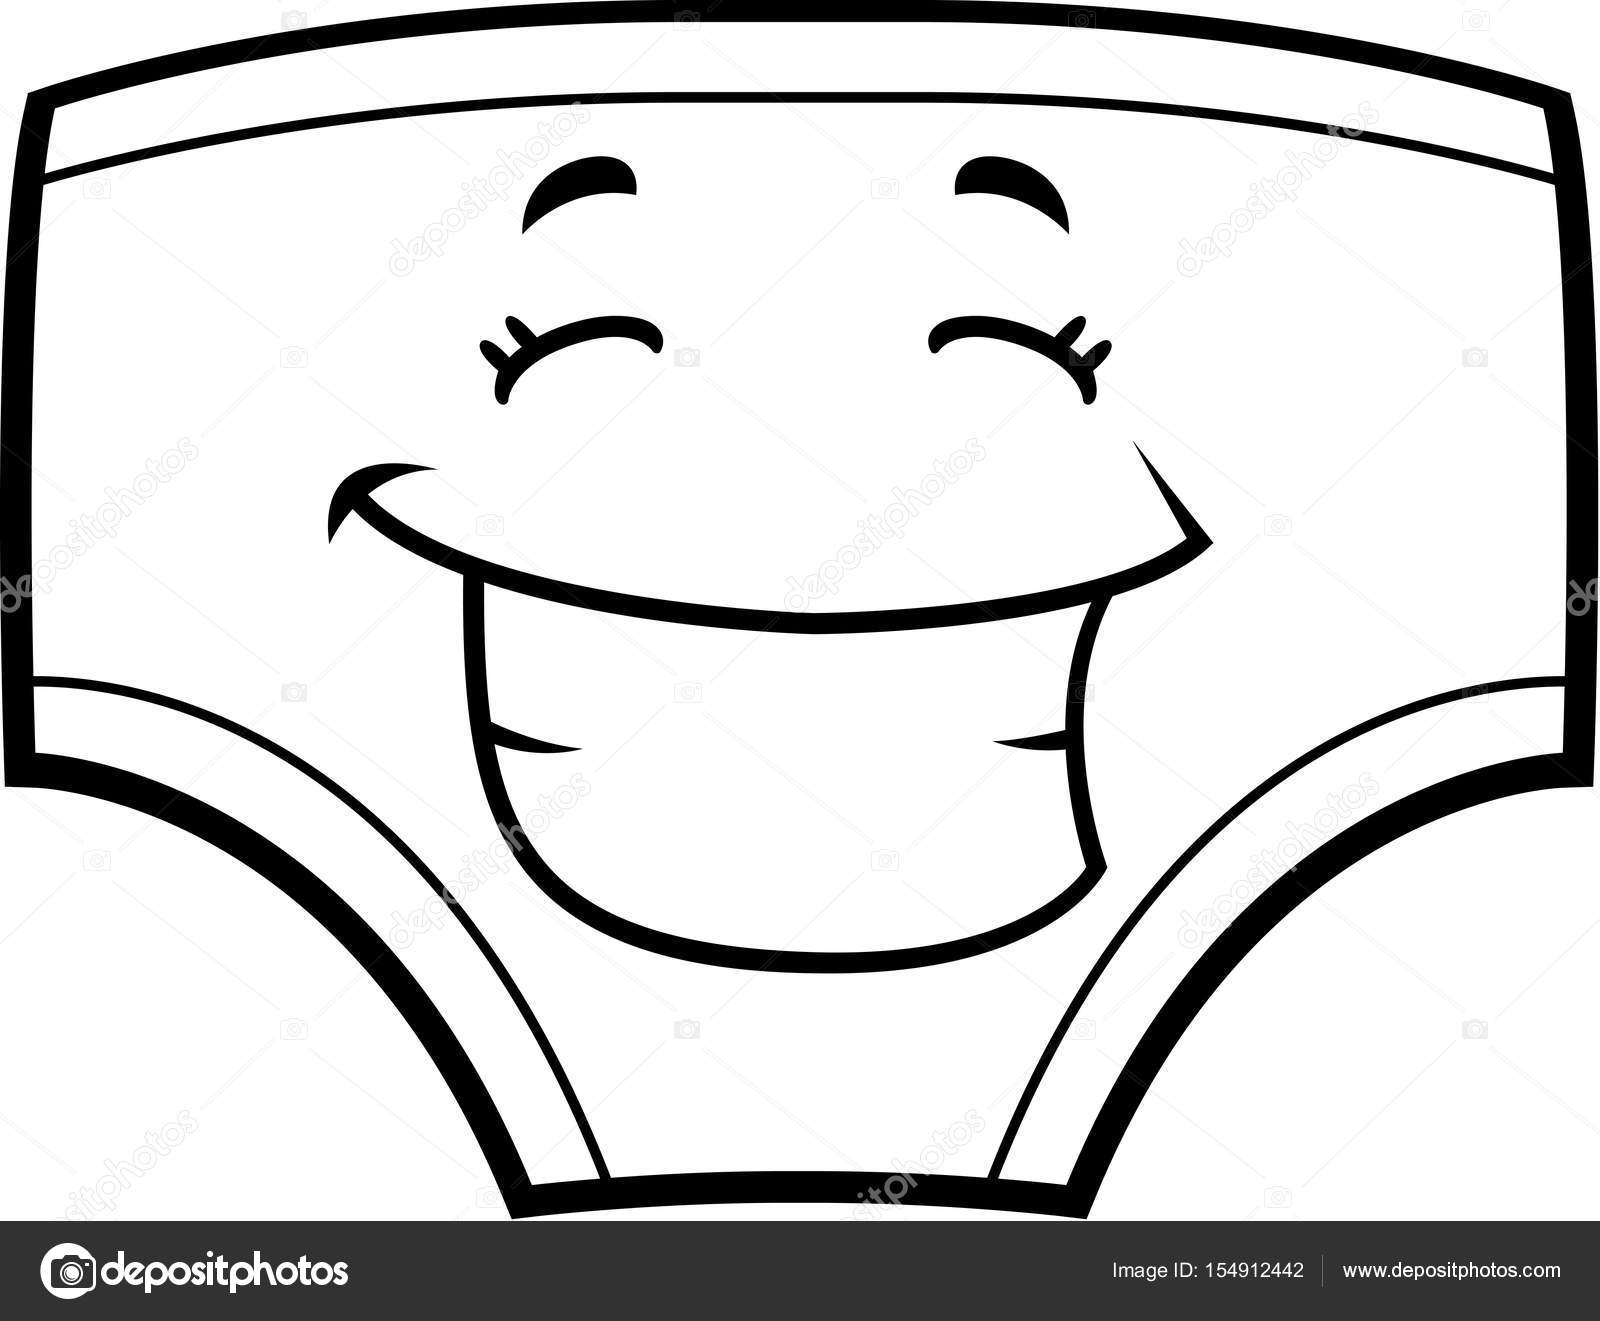 https://st3.depositphotos.com/5792148/15491/v/1600/depositphotos_154912442-stock-illustration-cartoon-underwear-smiling.jpg